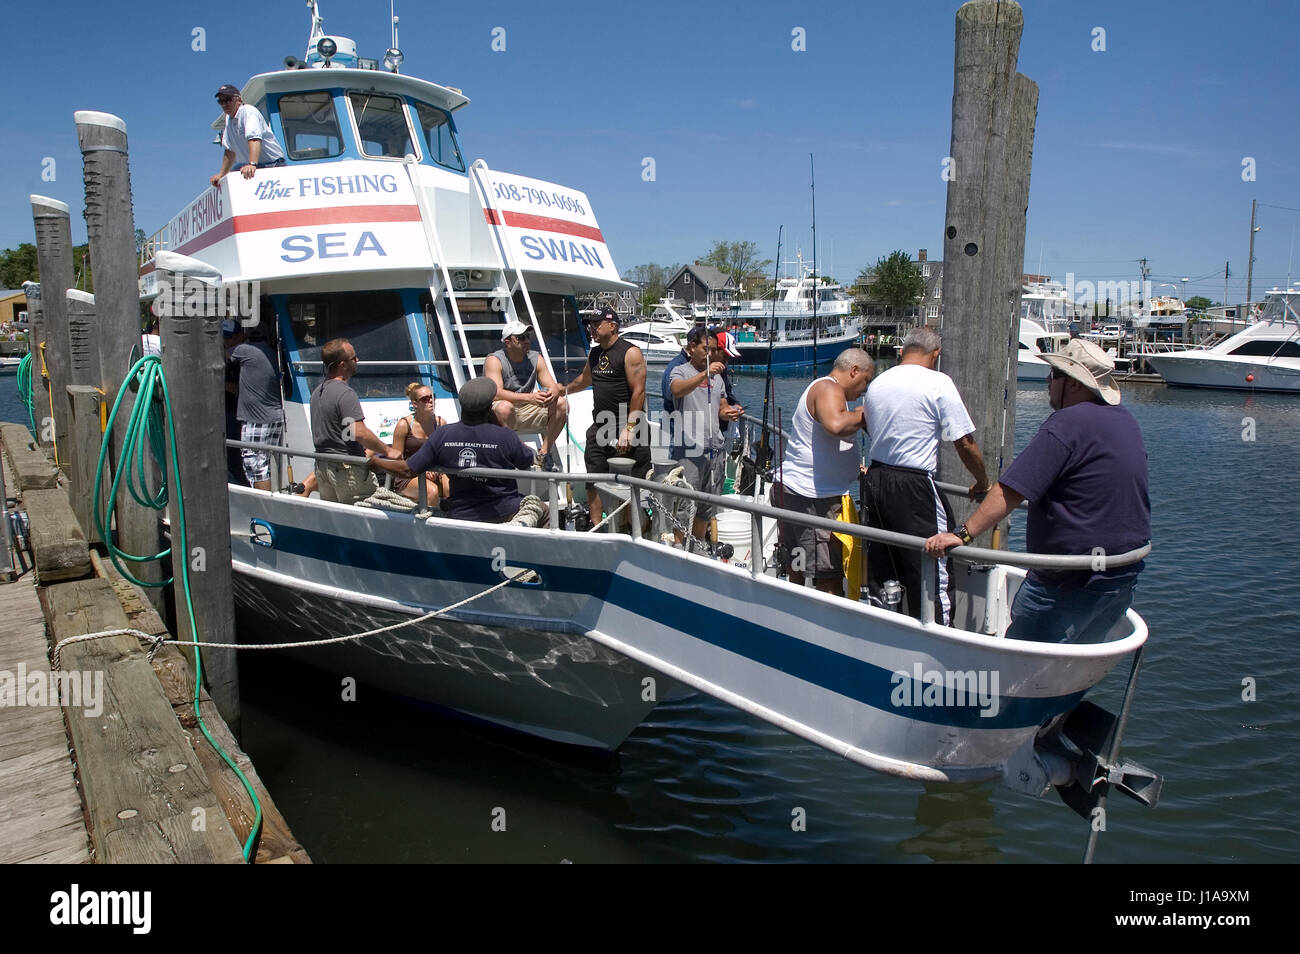 Hyannis Harbor - intitolato Per una giornata di pesca sul 'Sea Swan", Hyannis, Massachusetts, STATI UNITI D'AMERICA Foto Stock